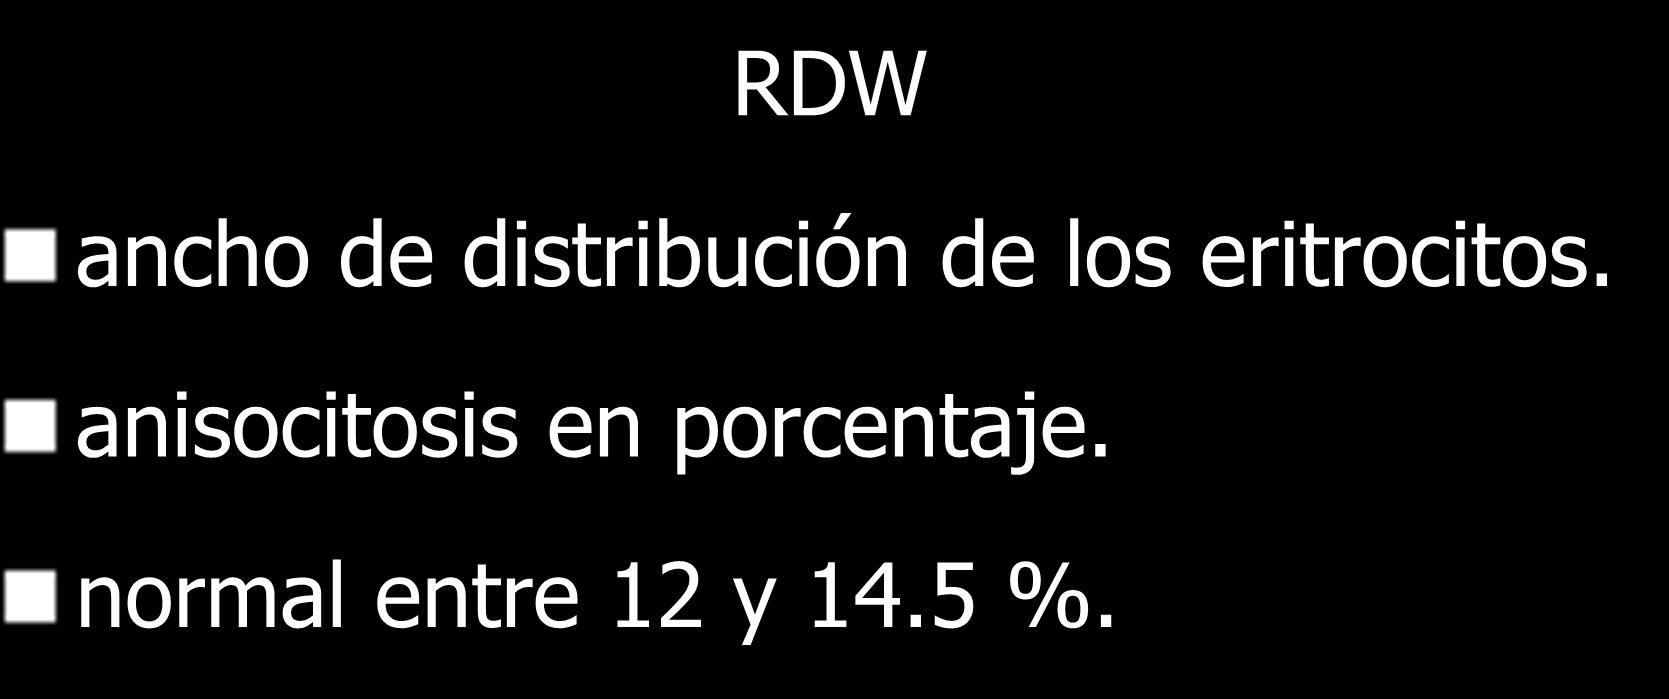 RDW ancho de distribución de los eritrocitos.